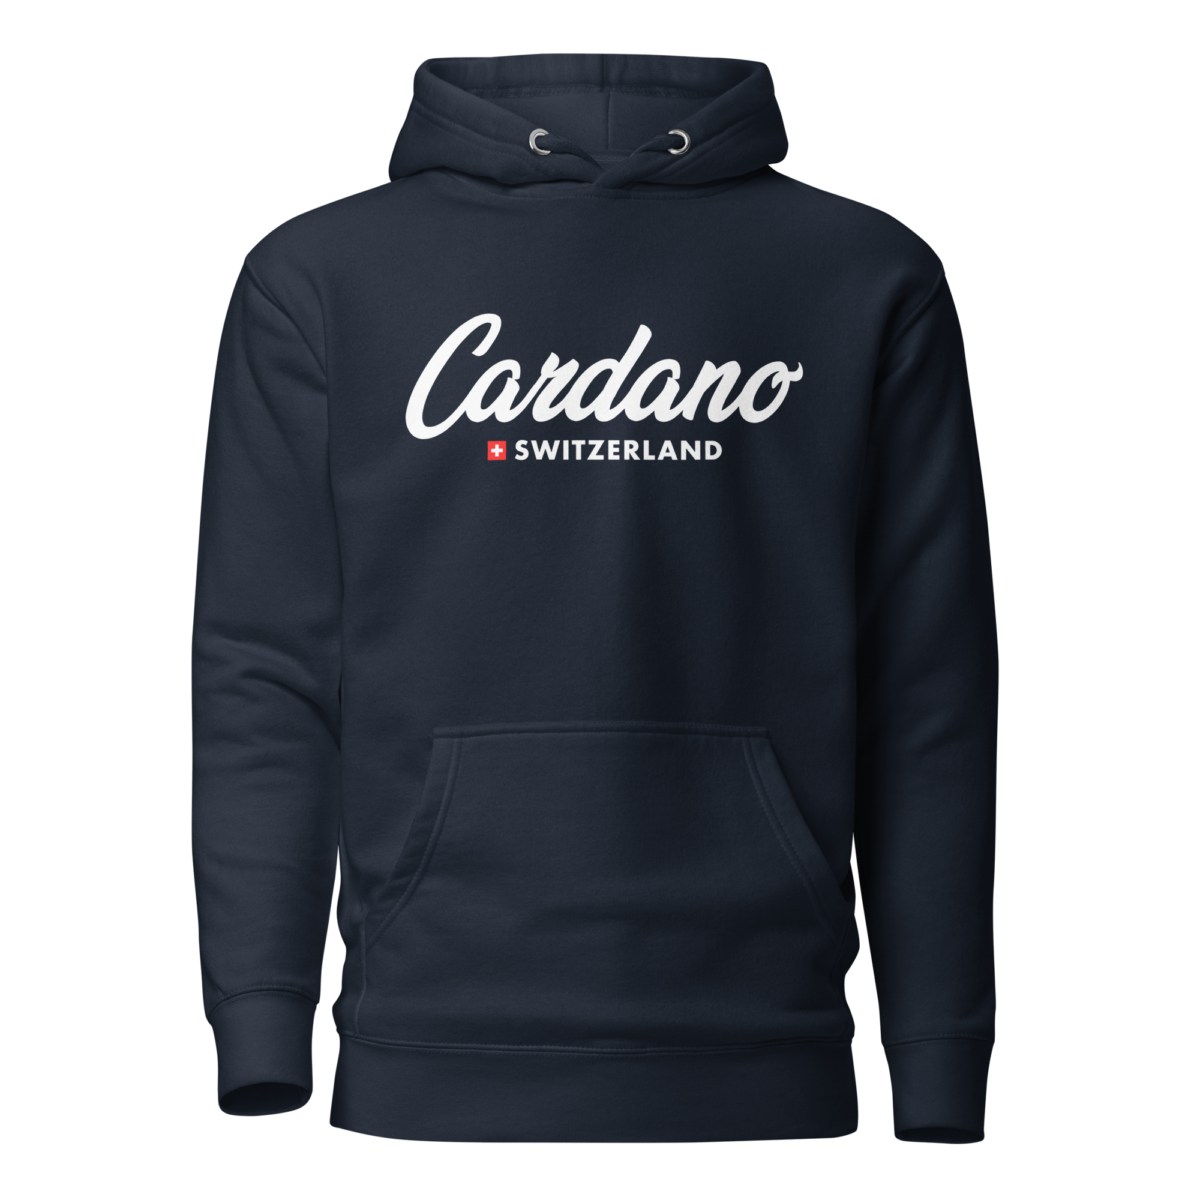 unisex premium hoodie navy blazer front 63a21a2a0964c - Cardano Switzerland Hoodie